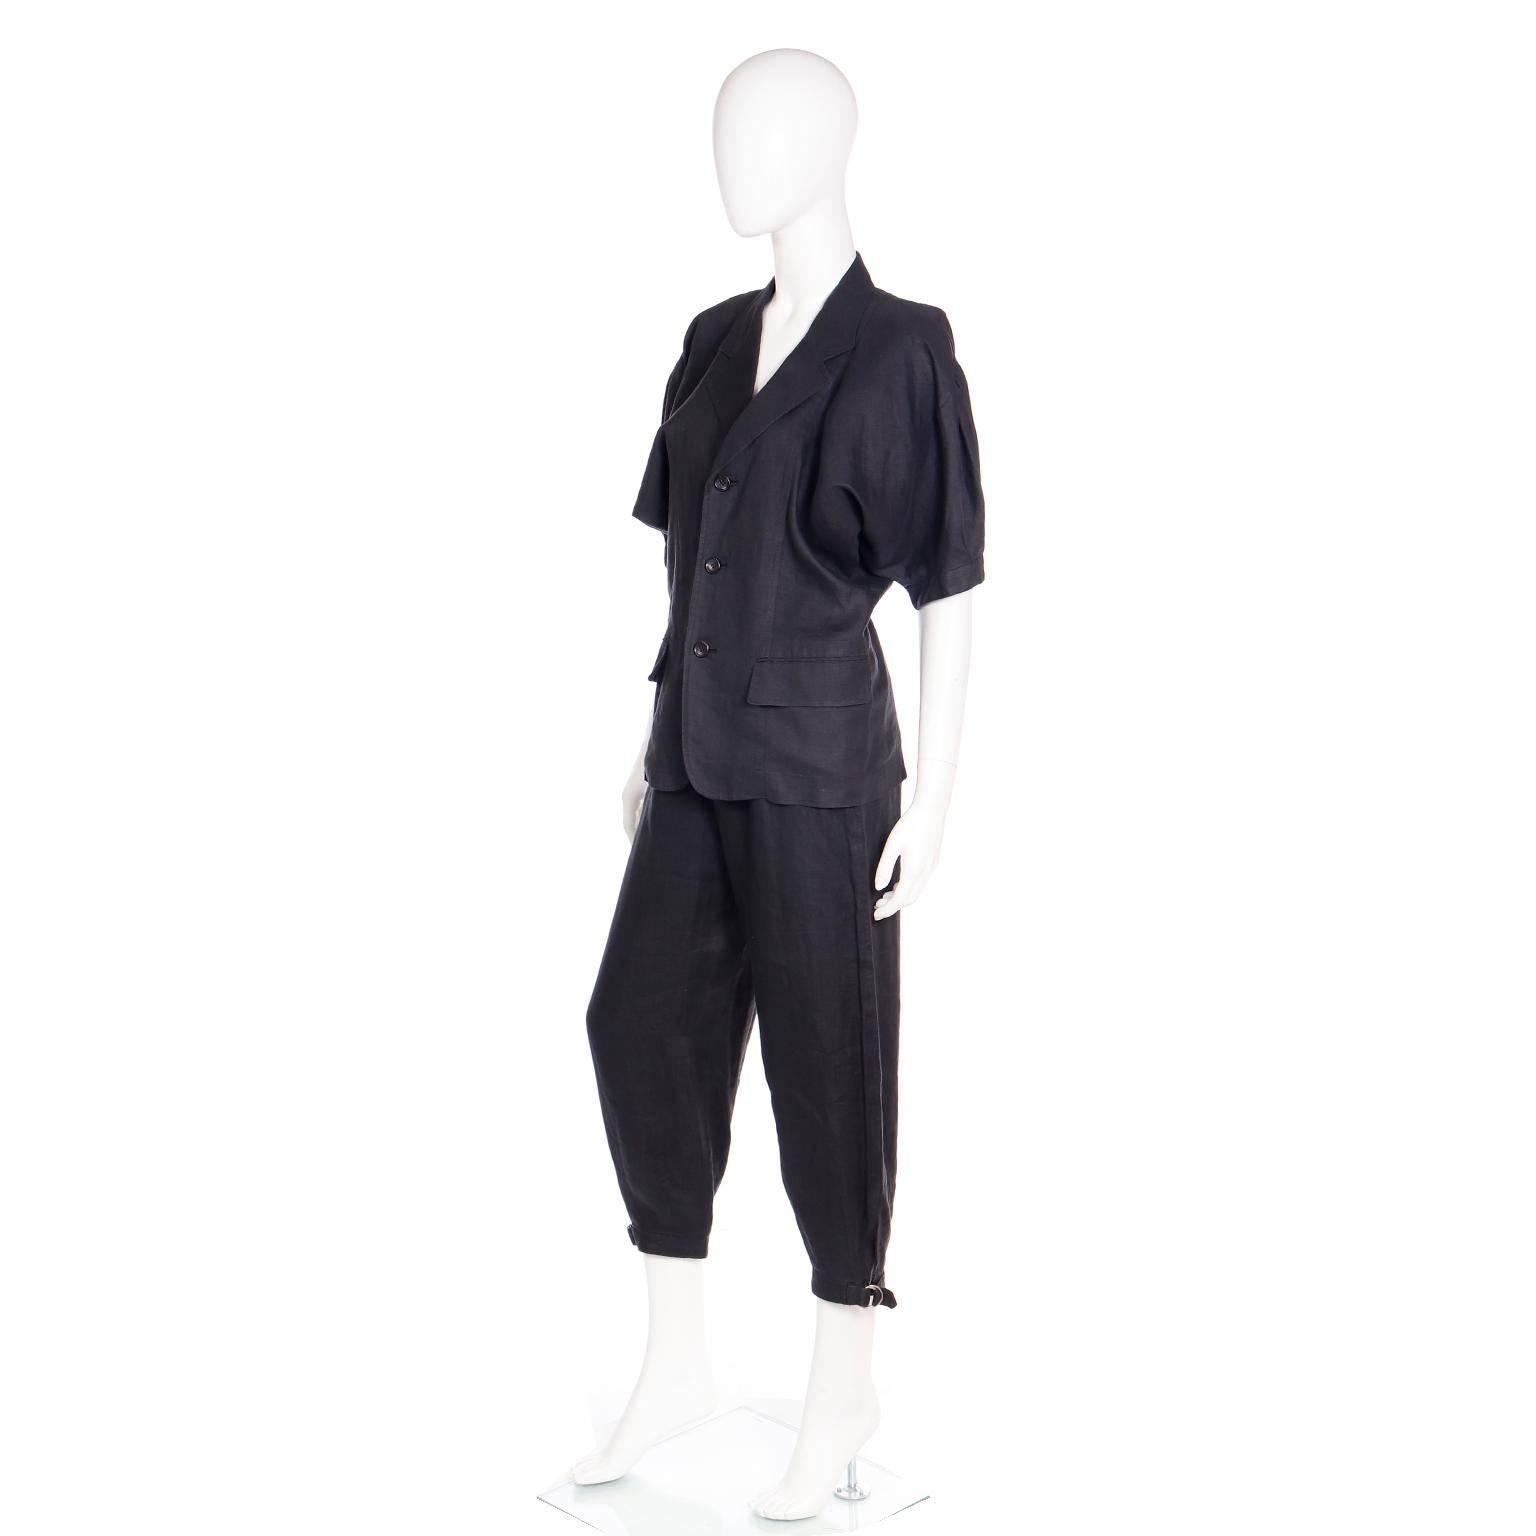 Comme des Garcons S/S 1989 Vintage Black Linen Jacket & Pants Outfit For Sale 6